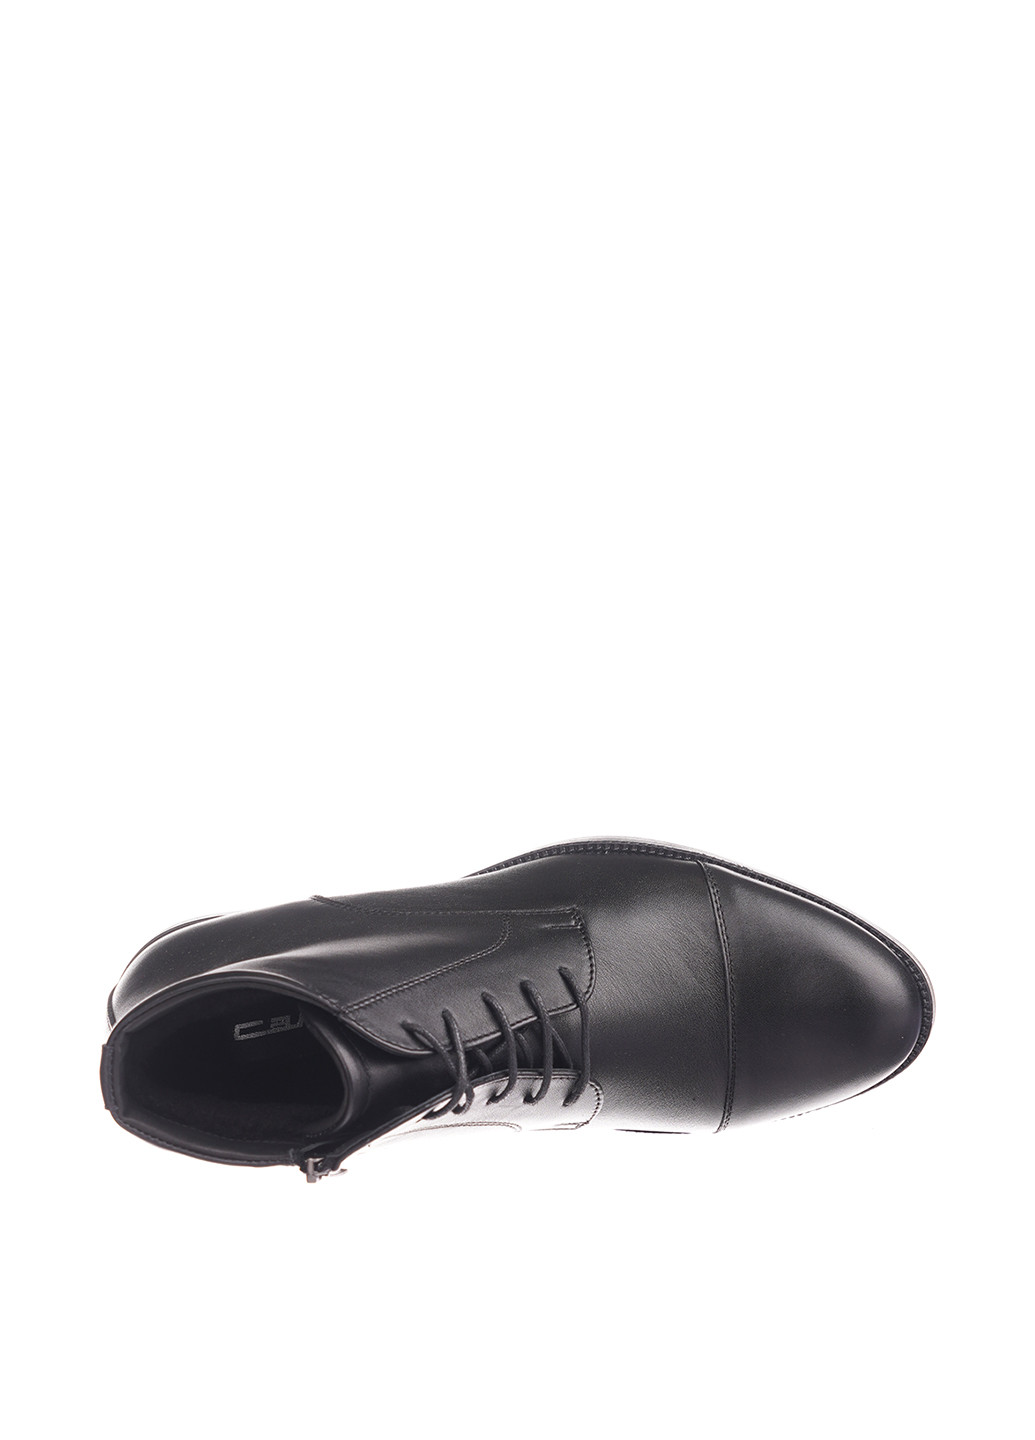 Черные зимние ботинки Caman